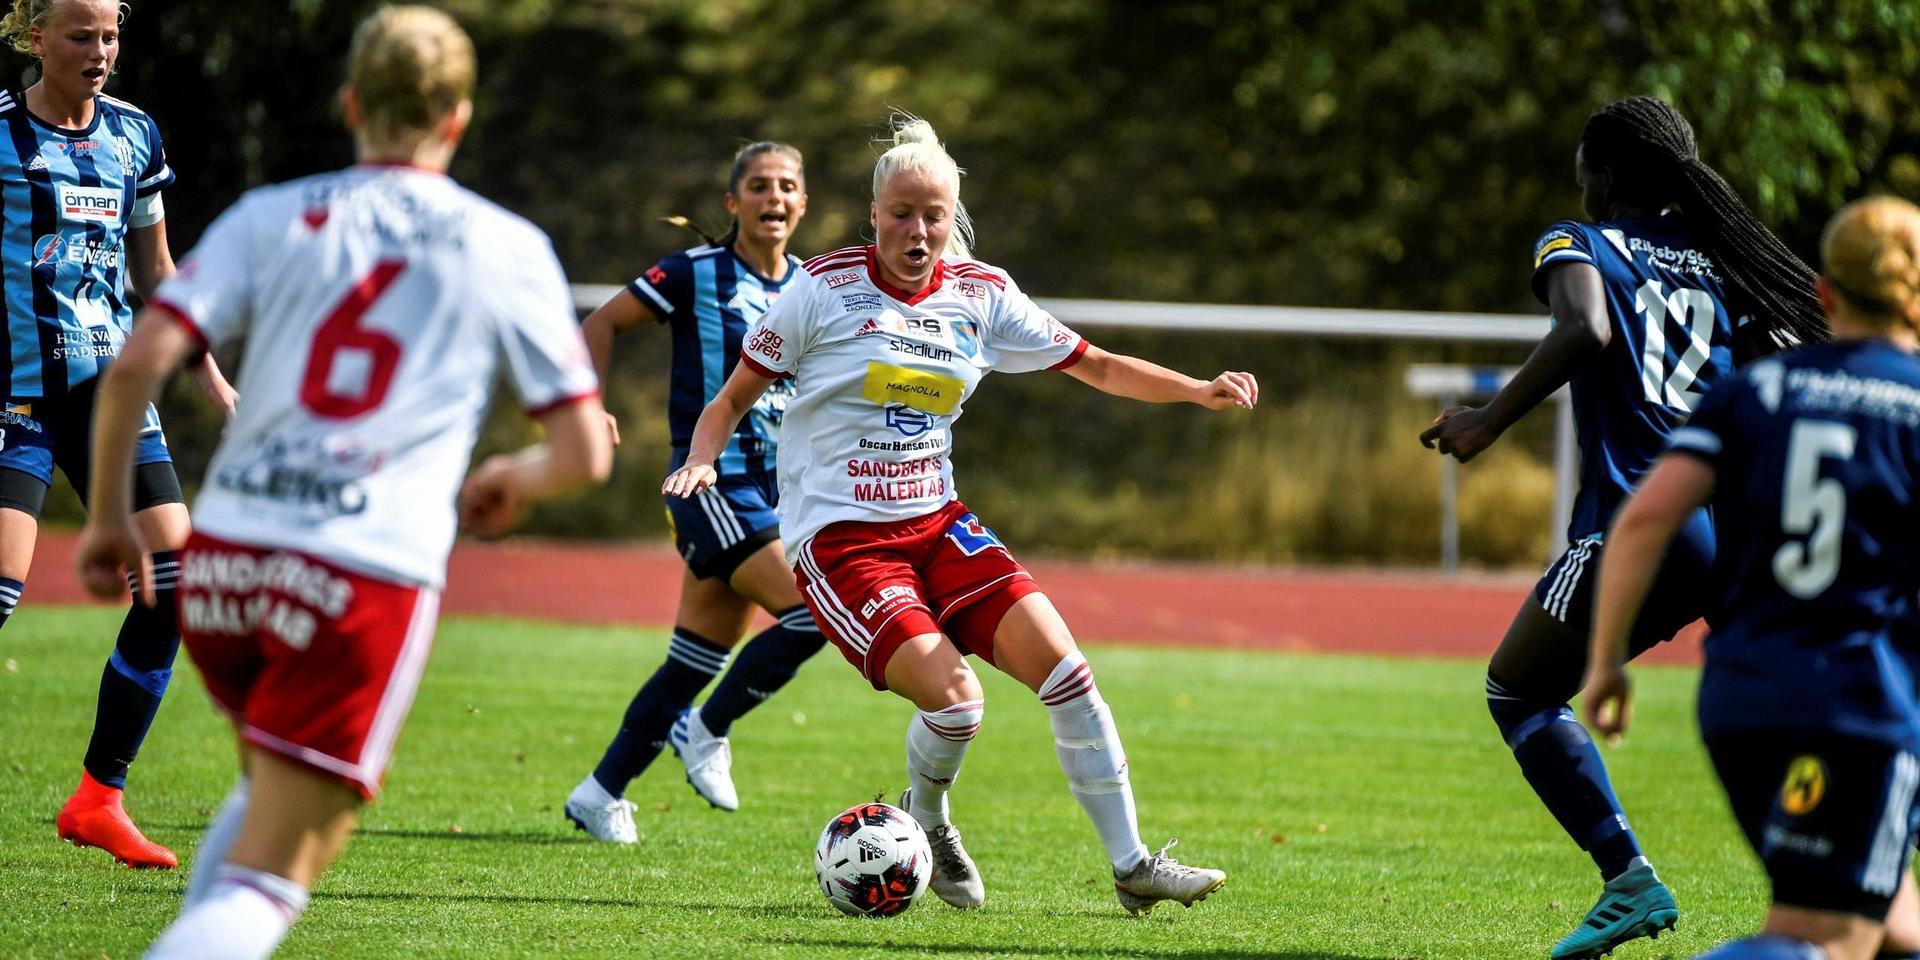 Halmia, som i fjol slogs i toppen av division 1, inleder ett nytt samarbete med division 3-klubben Snöstorp Nyhem på dam- och flicksidan.